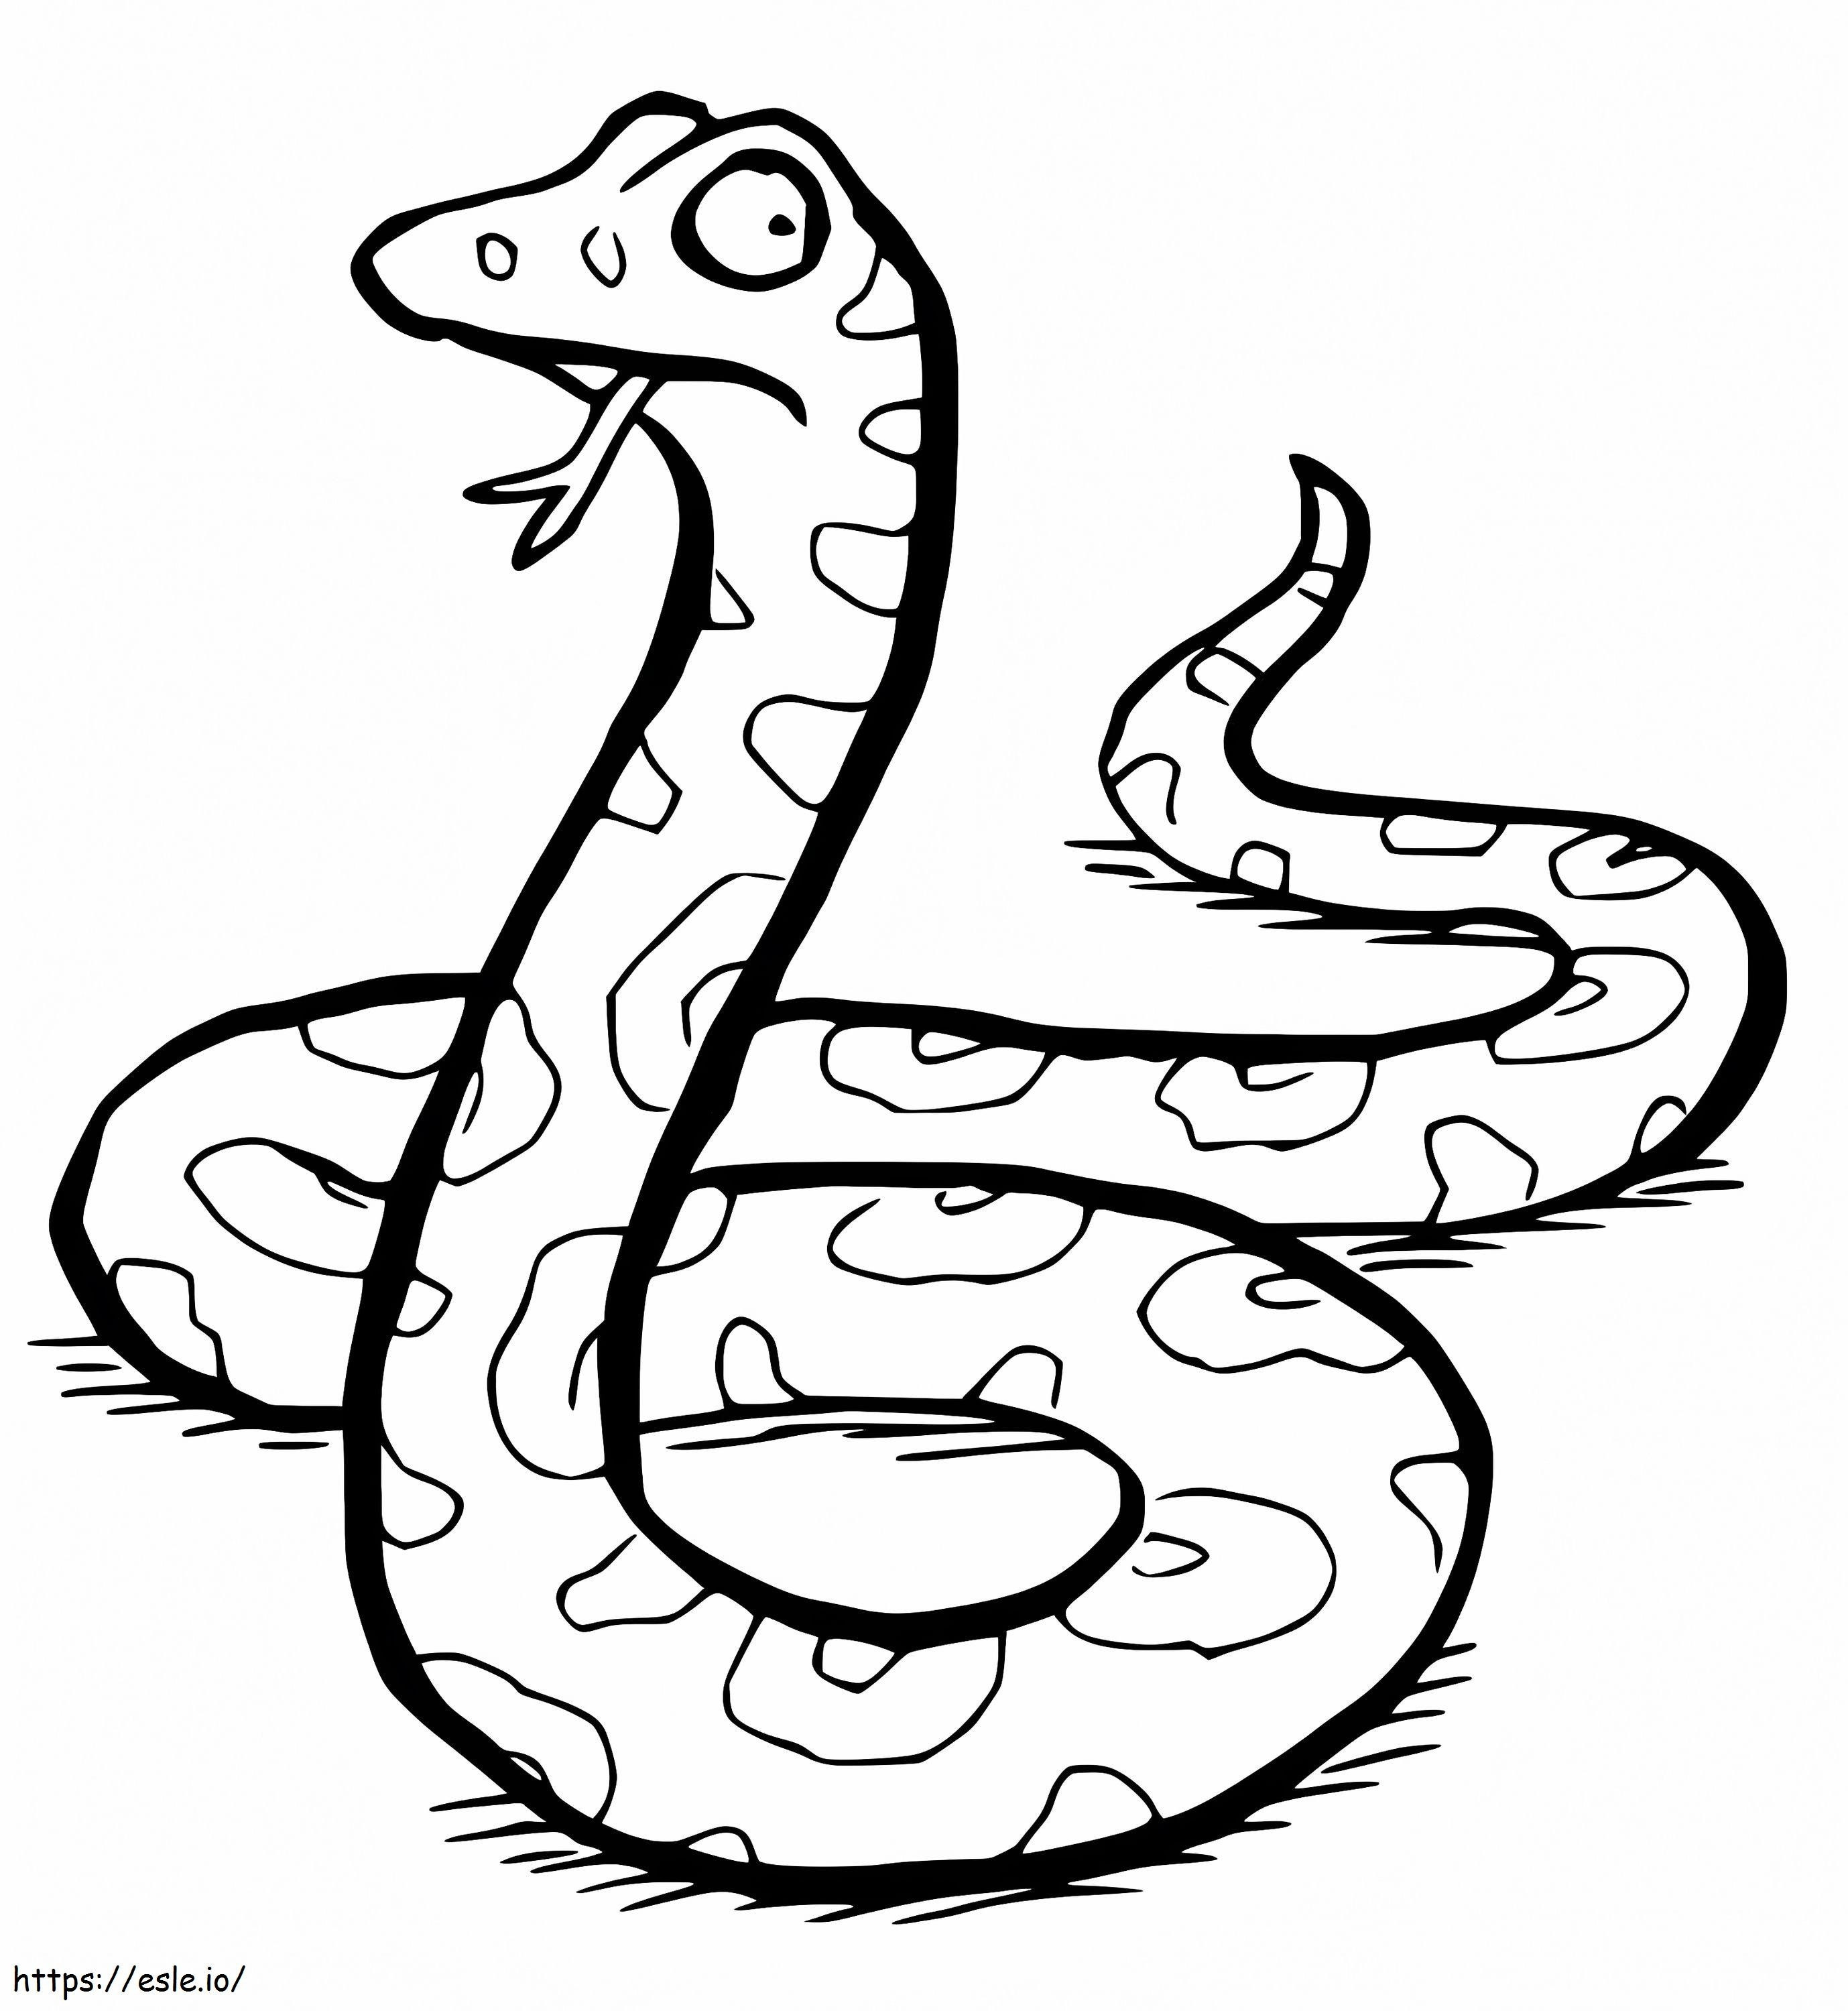 Kígyó Gruffaloból kifestő